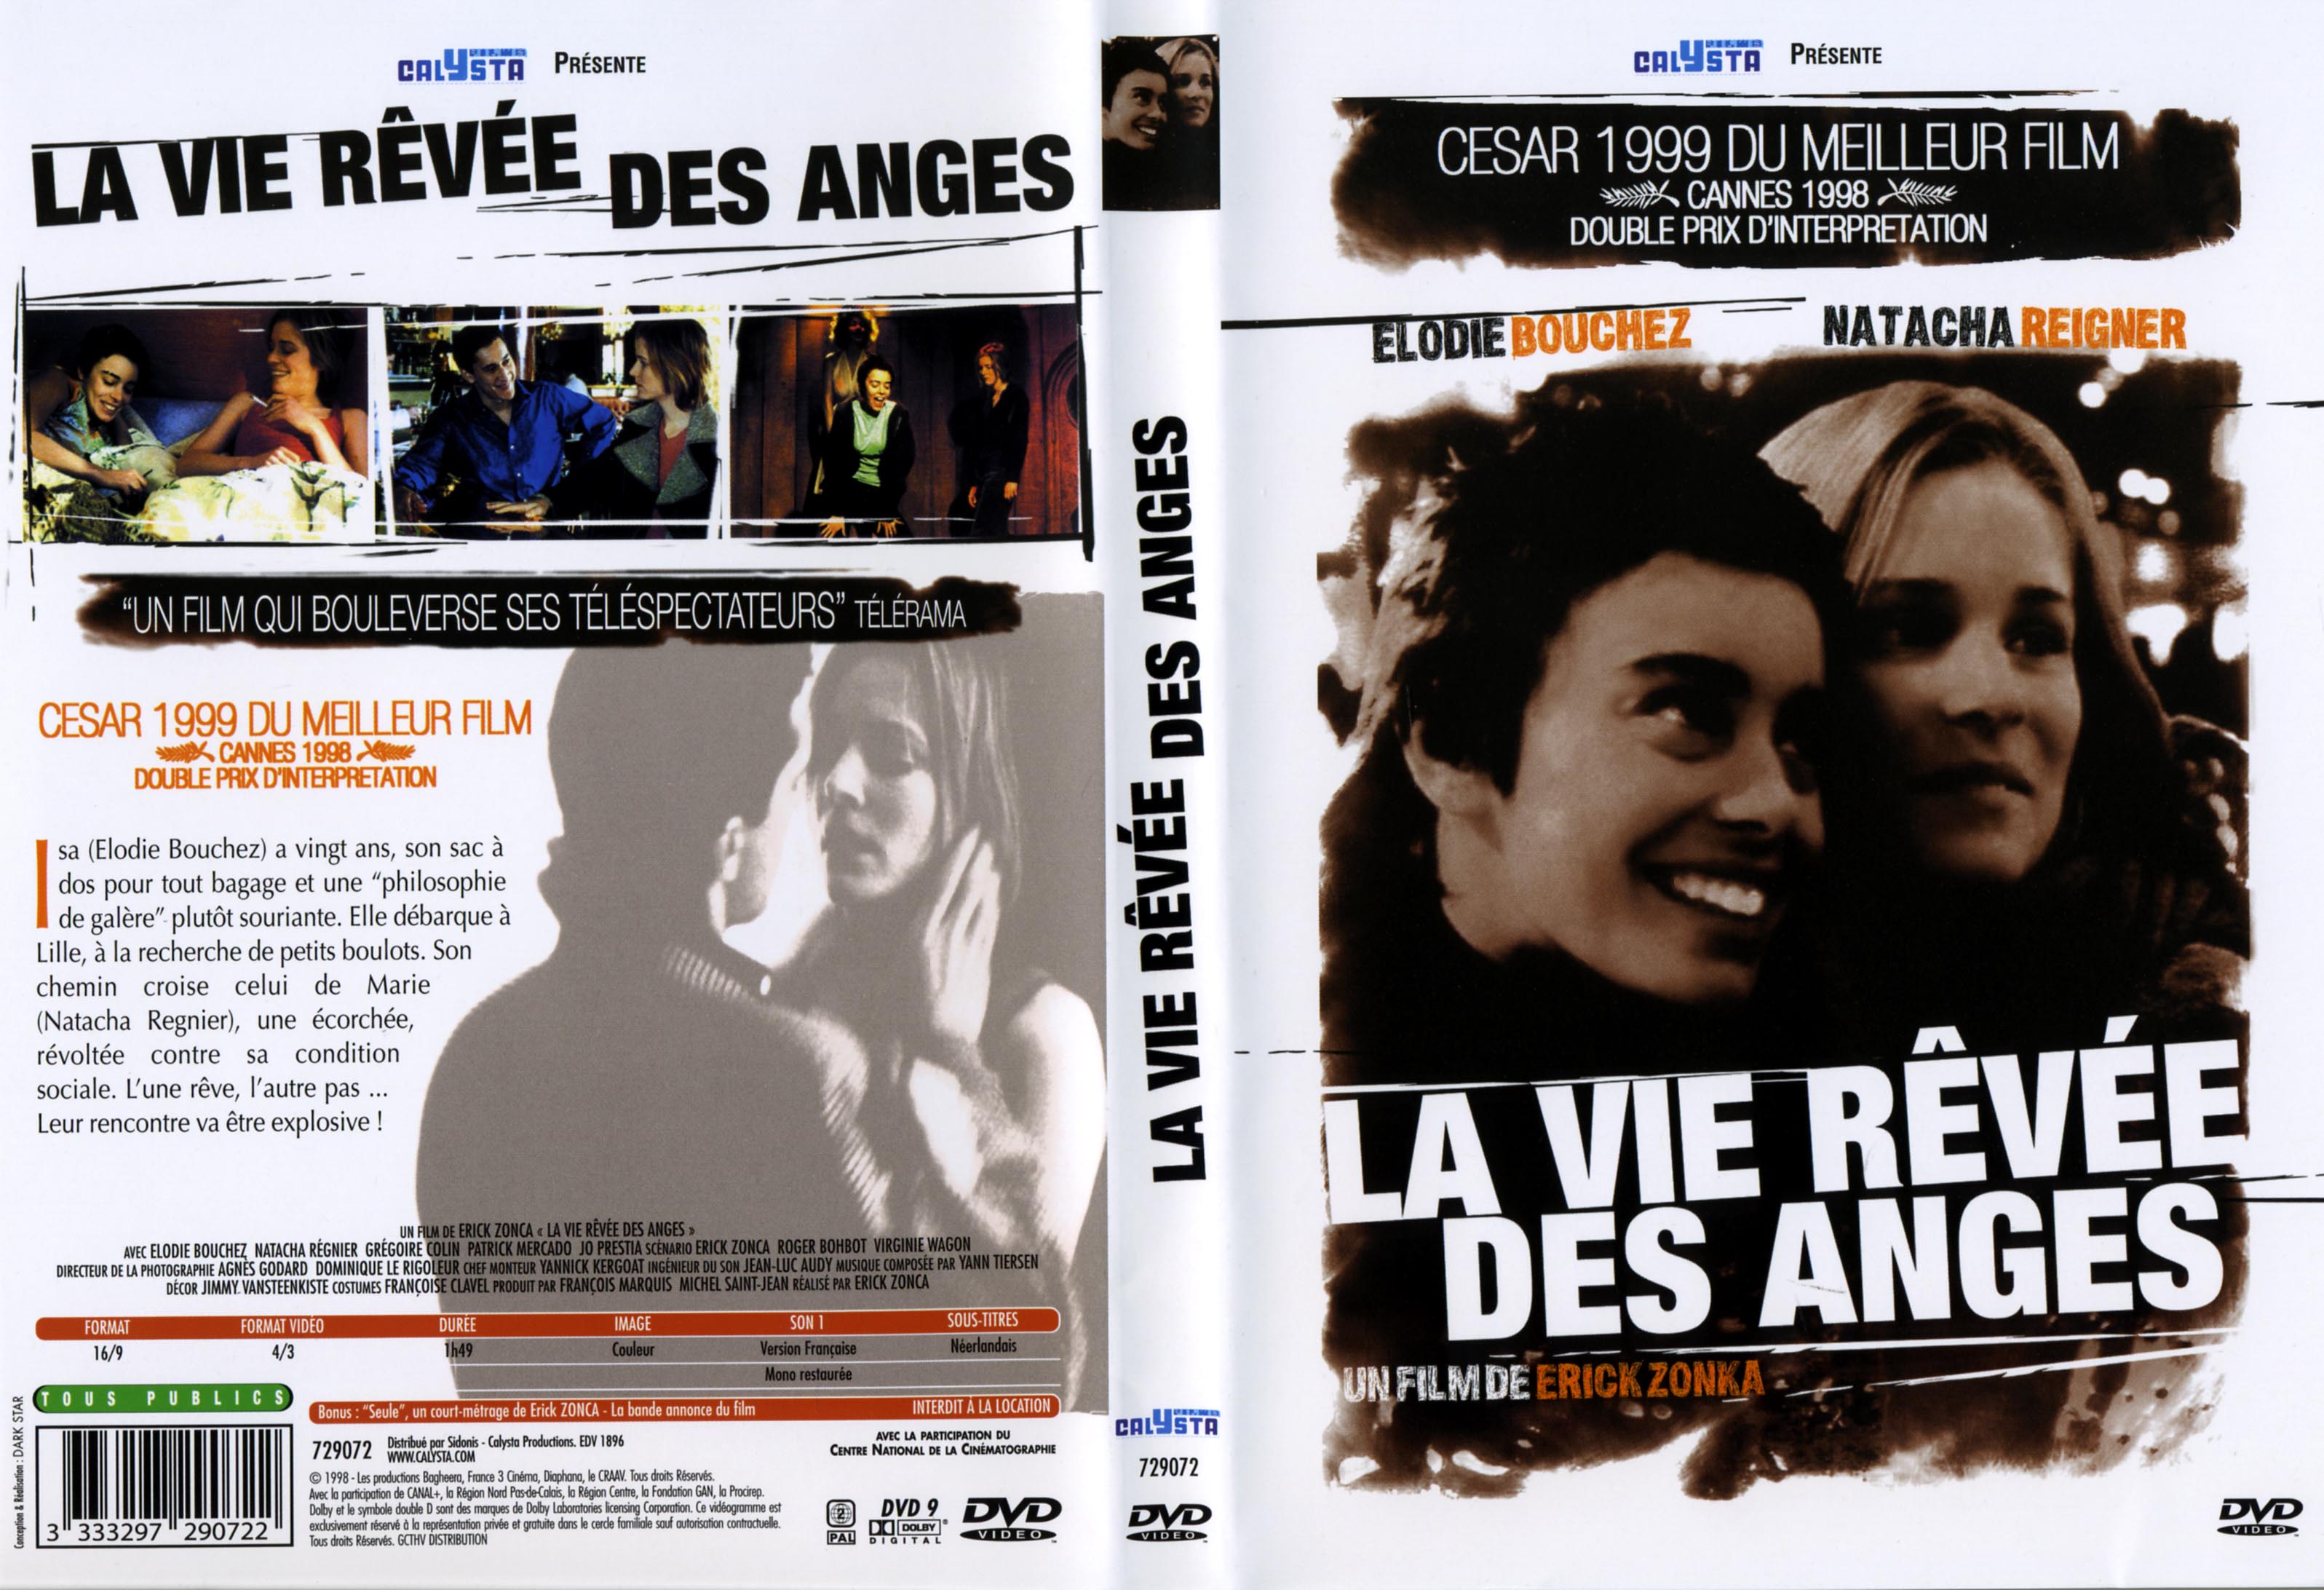 Jaquette DVD La vie rve des anges v2